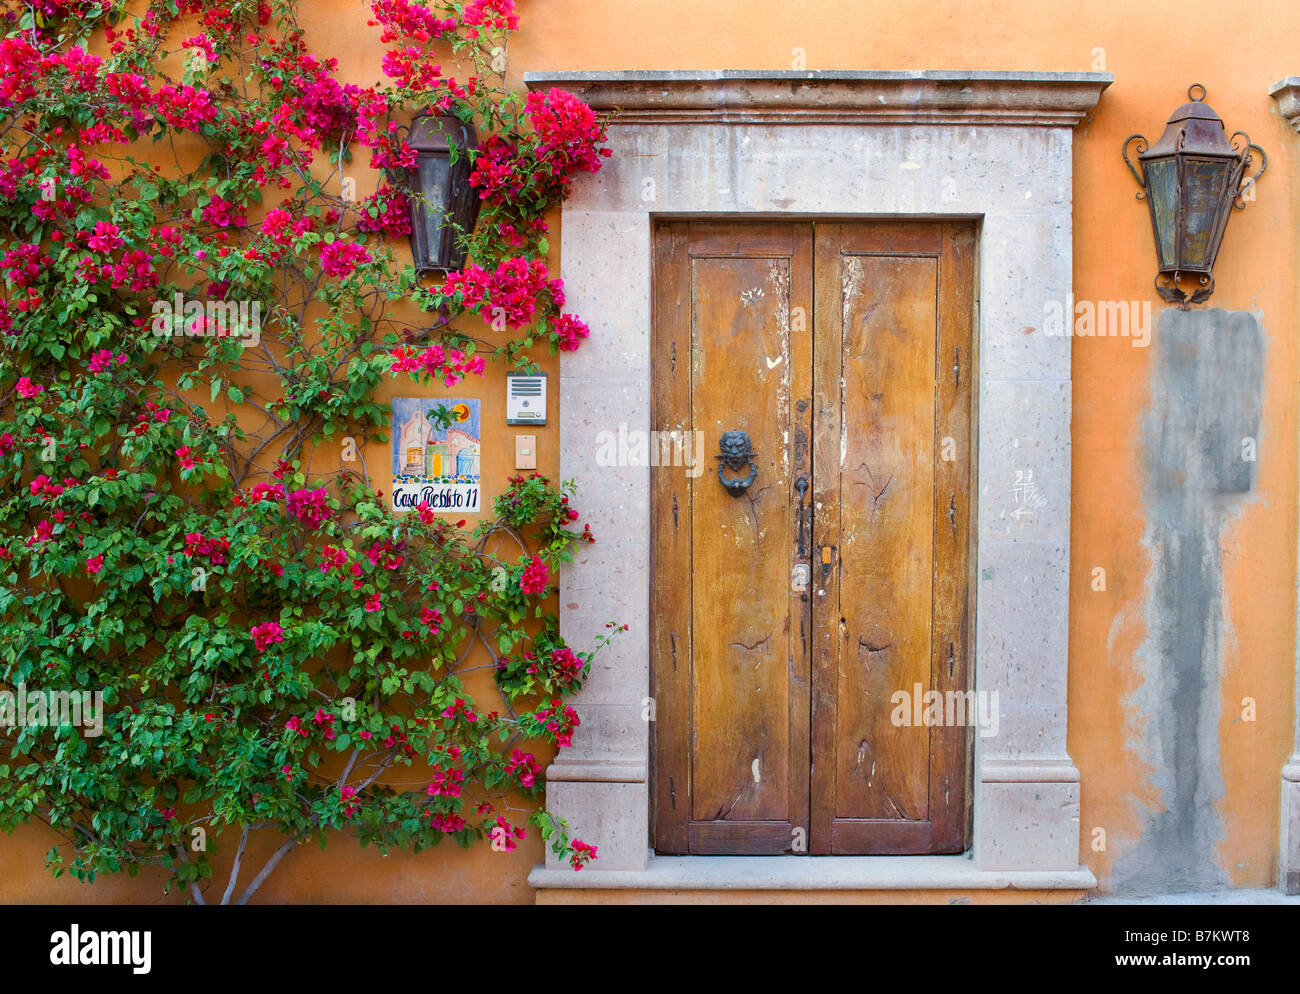 Doorway with Flowers, San Miguel de Allende, Mexico Stock Photo